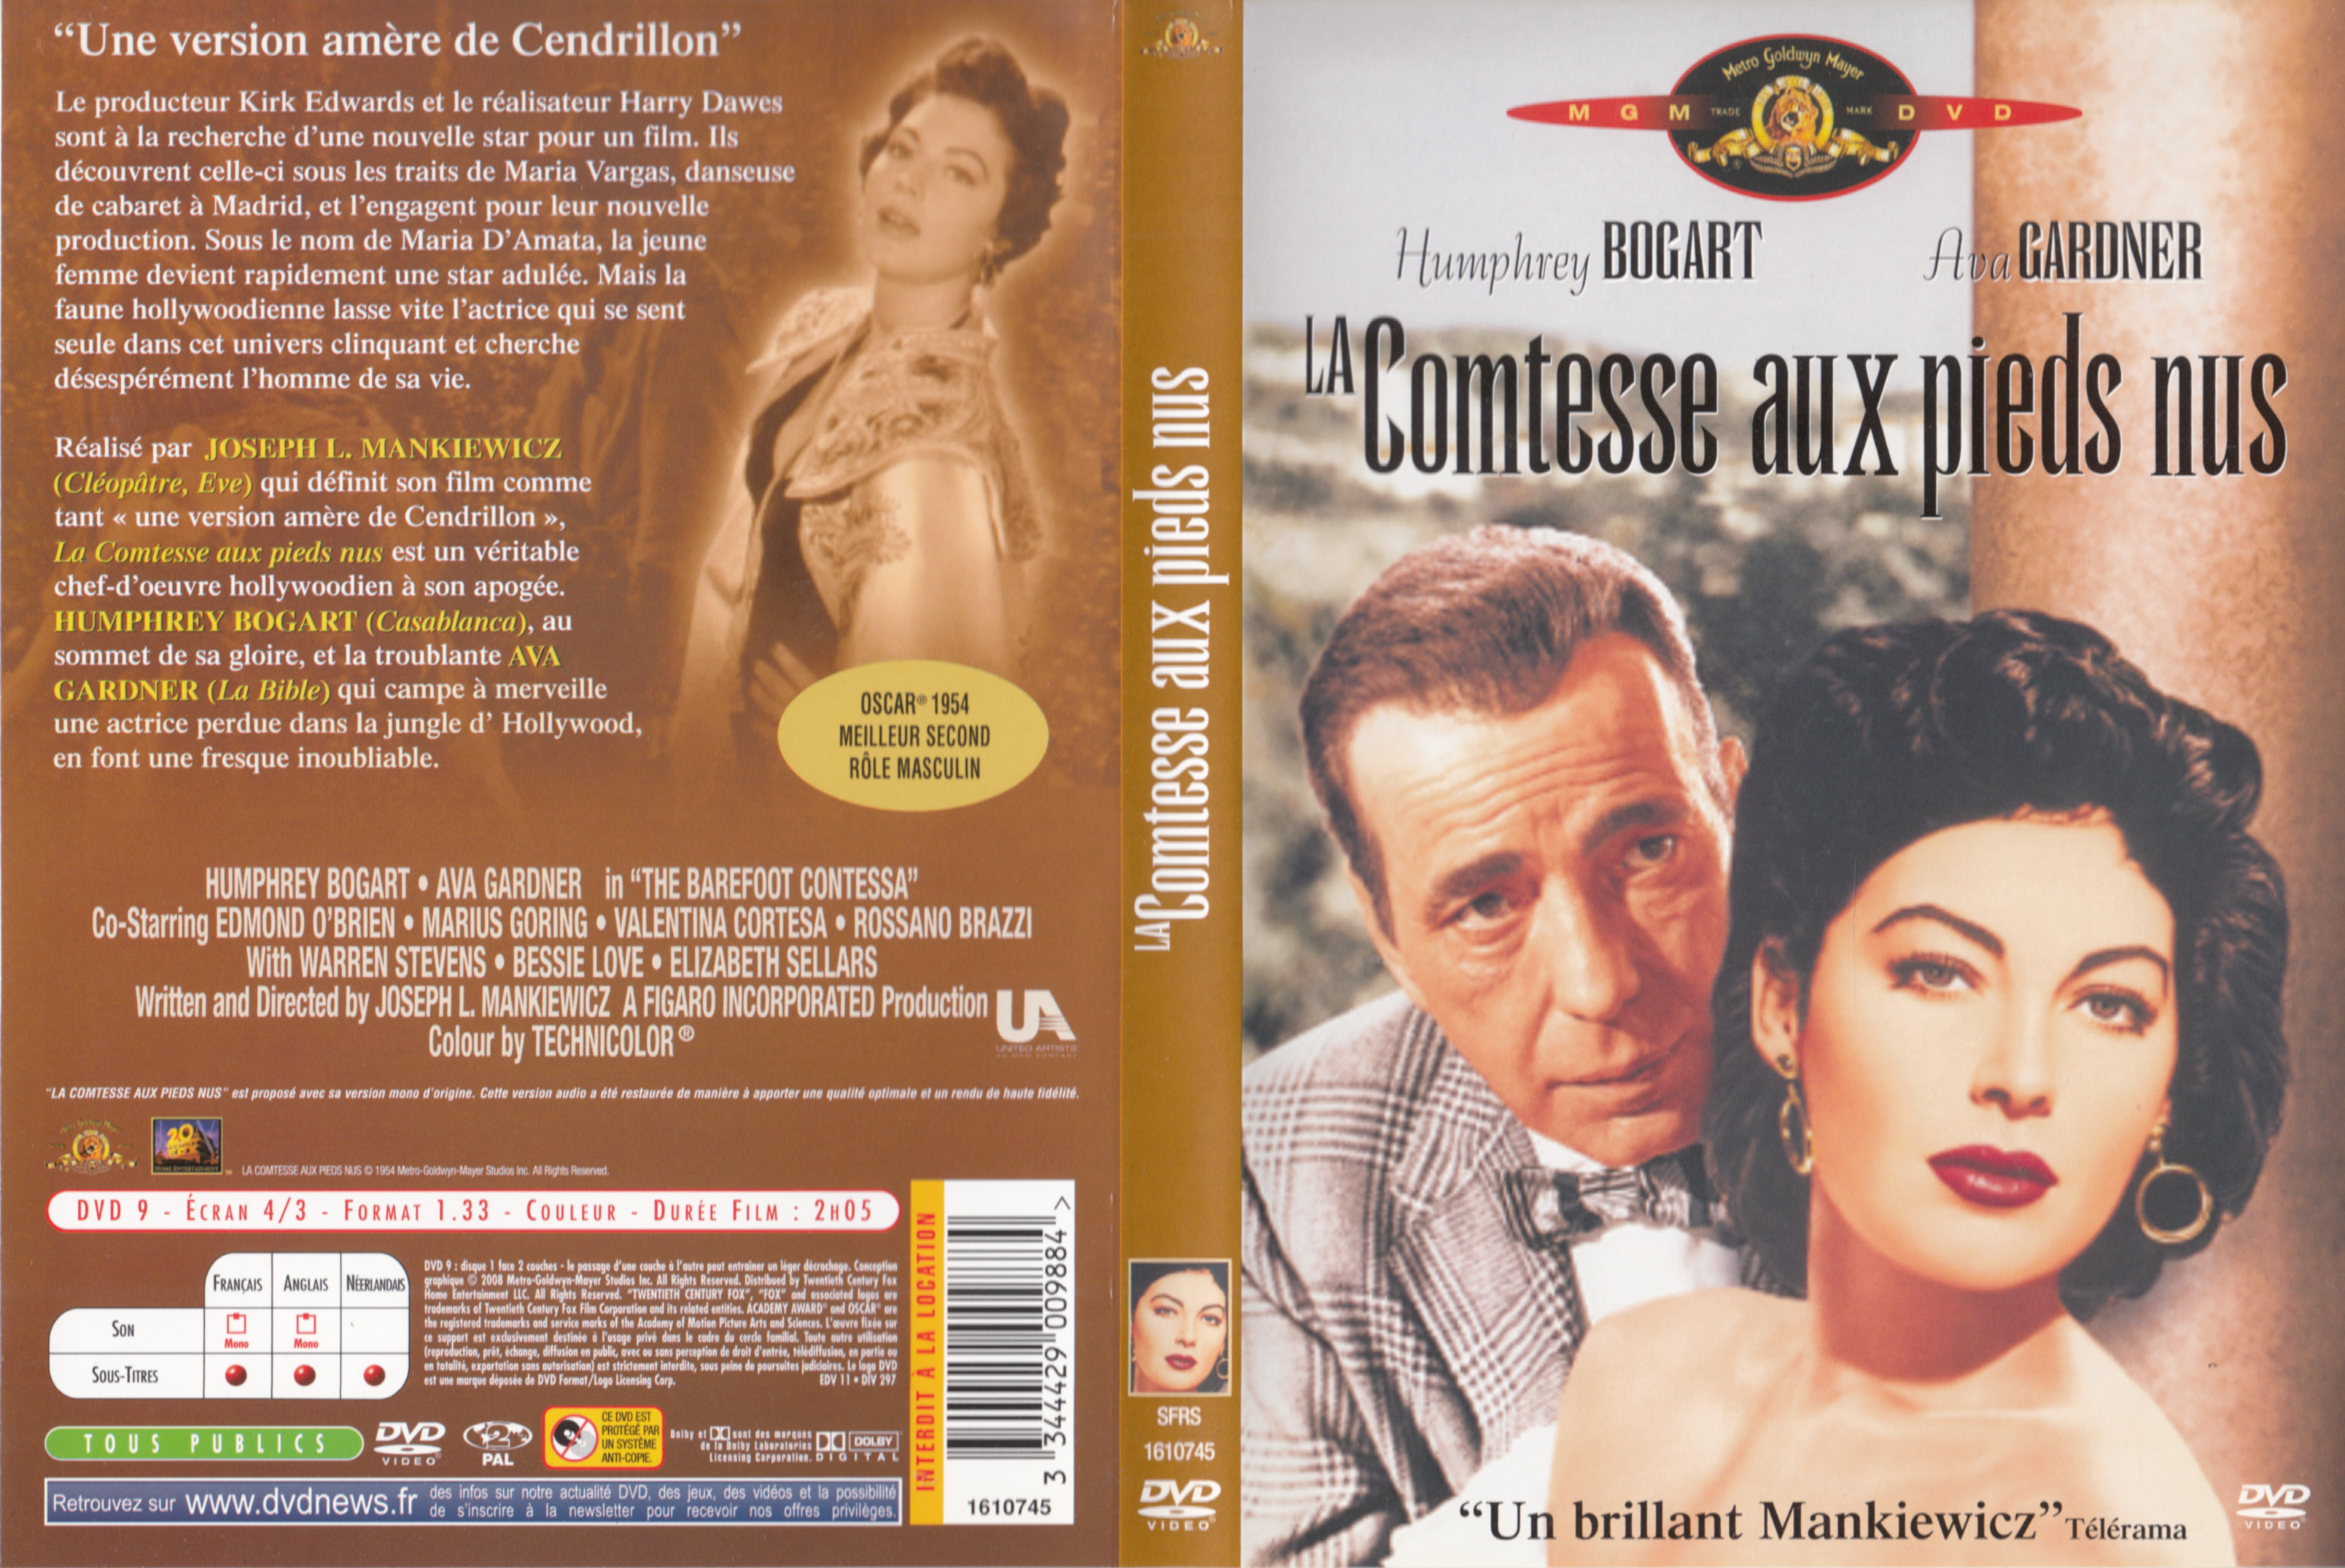 Jaquette DVD La comtesse aux pieds nus v3